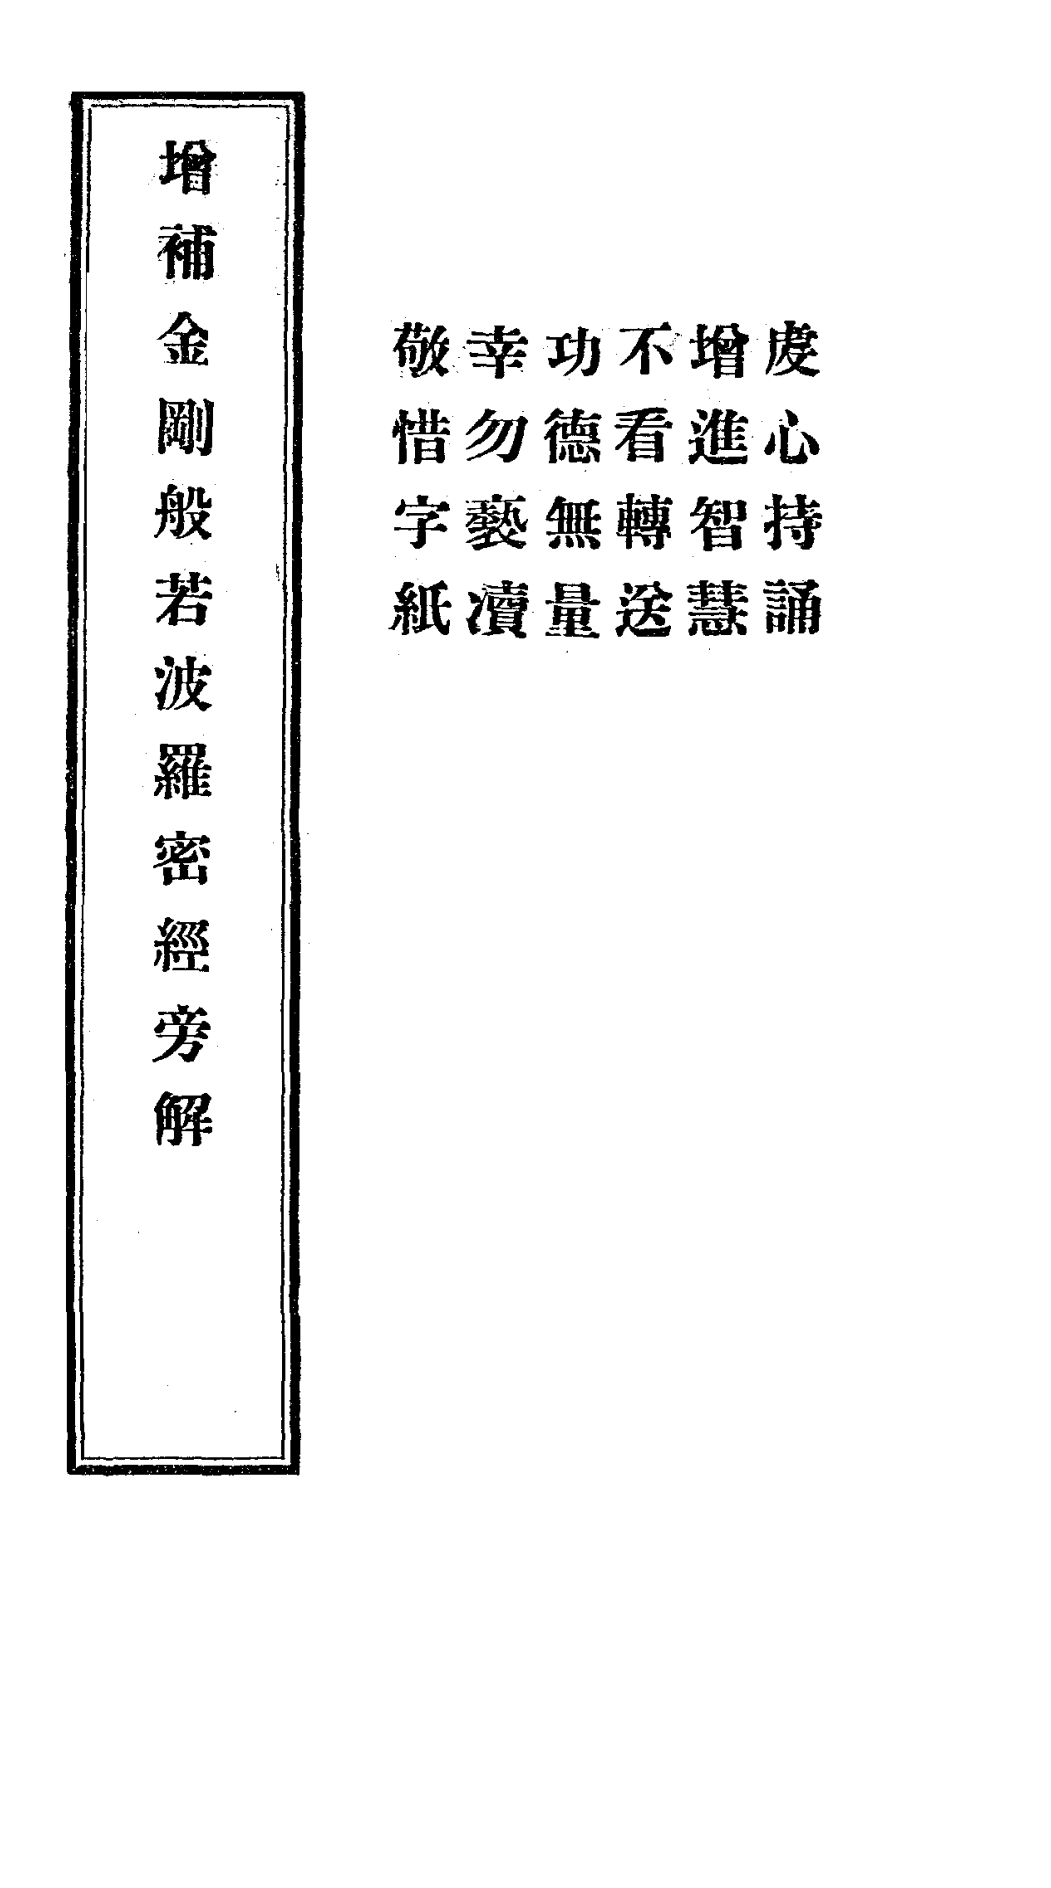 Zengbu jin'gang bore poluomi jing pangjie 1924.png